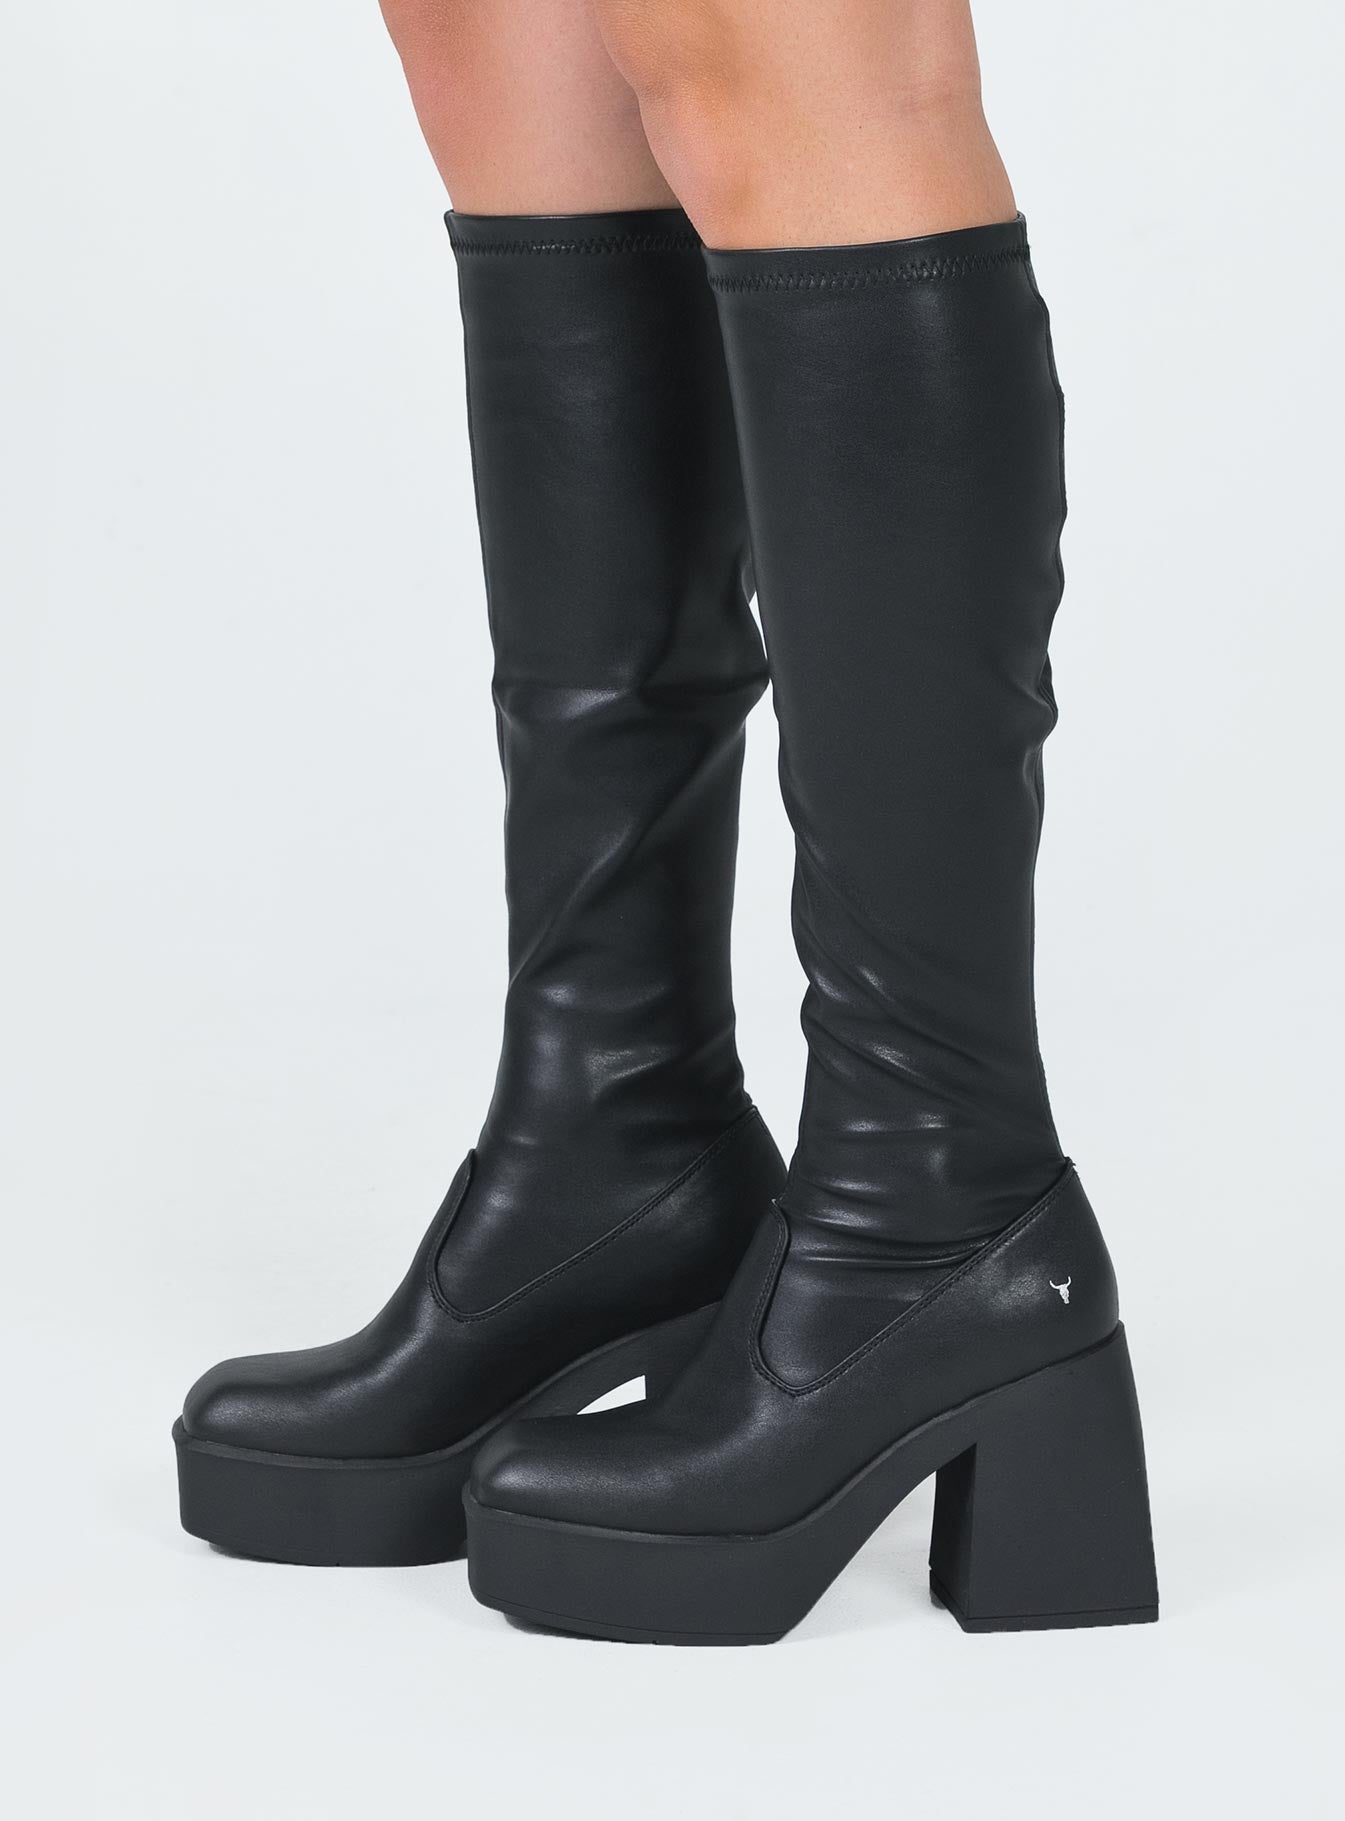 Windsor Smith BadGirls Black Stretch Sock Boots - SHOE US 6 / Black